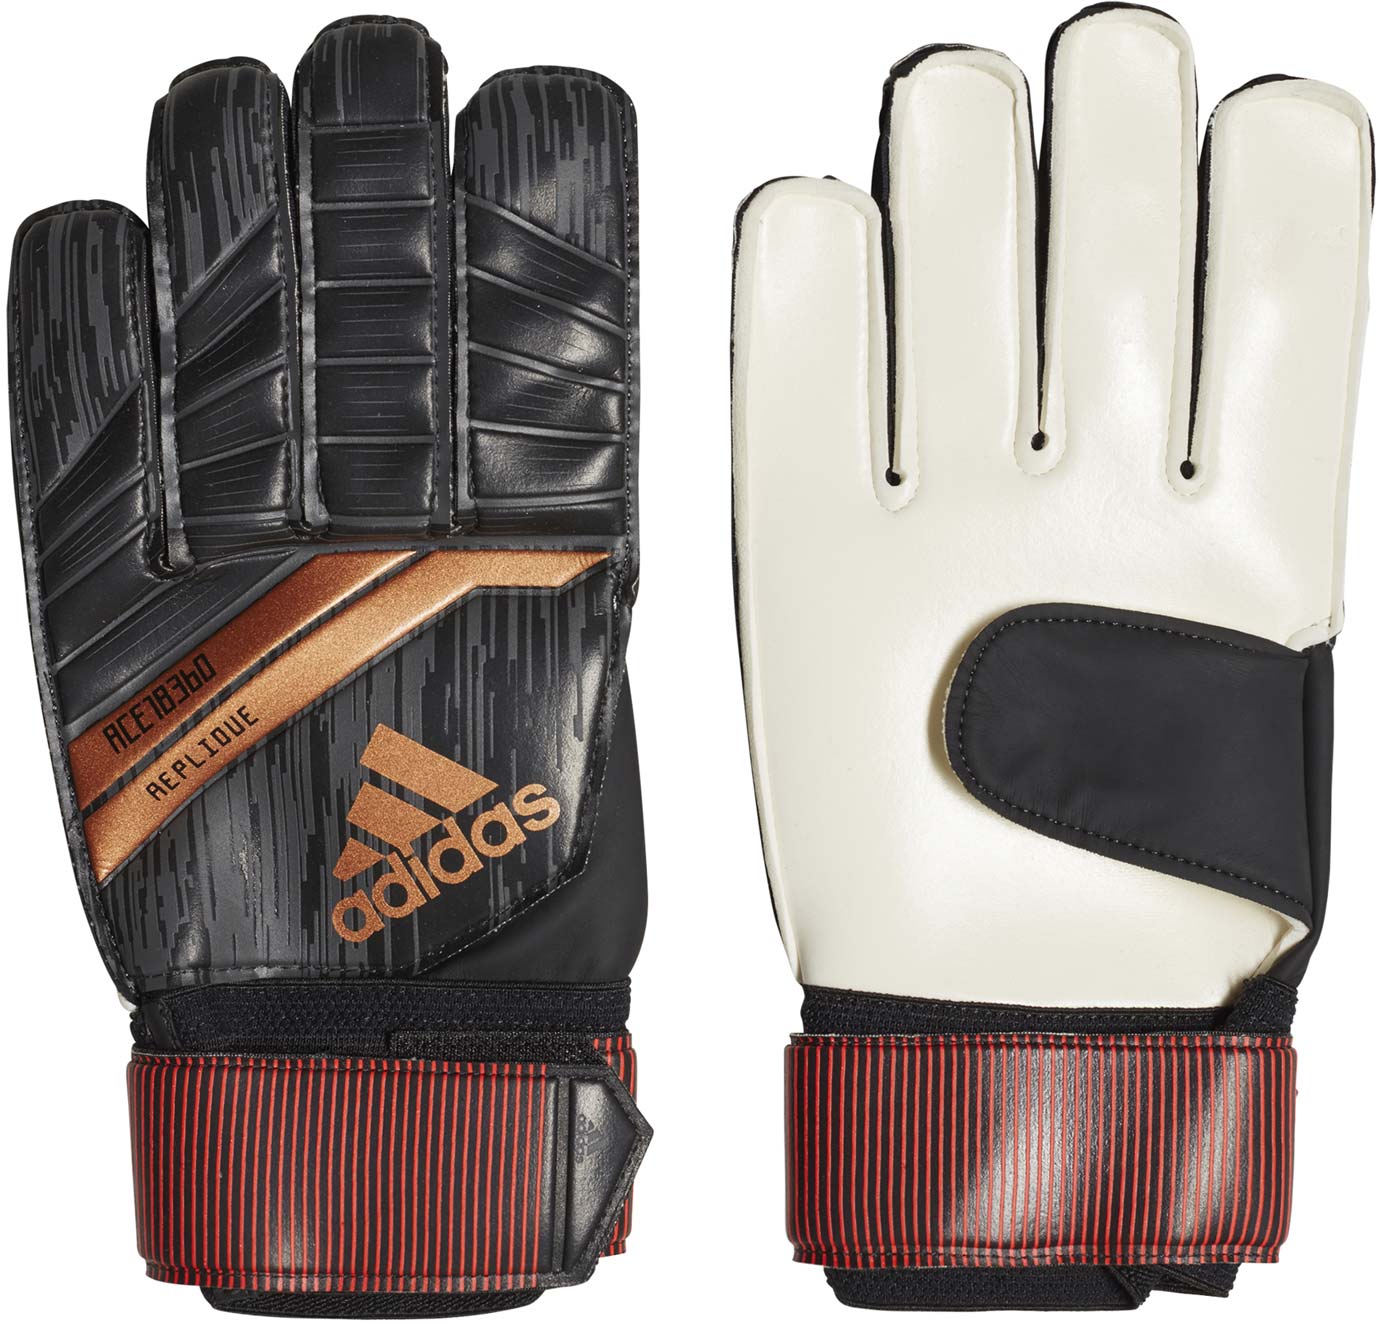 Men’s football gloves